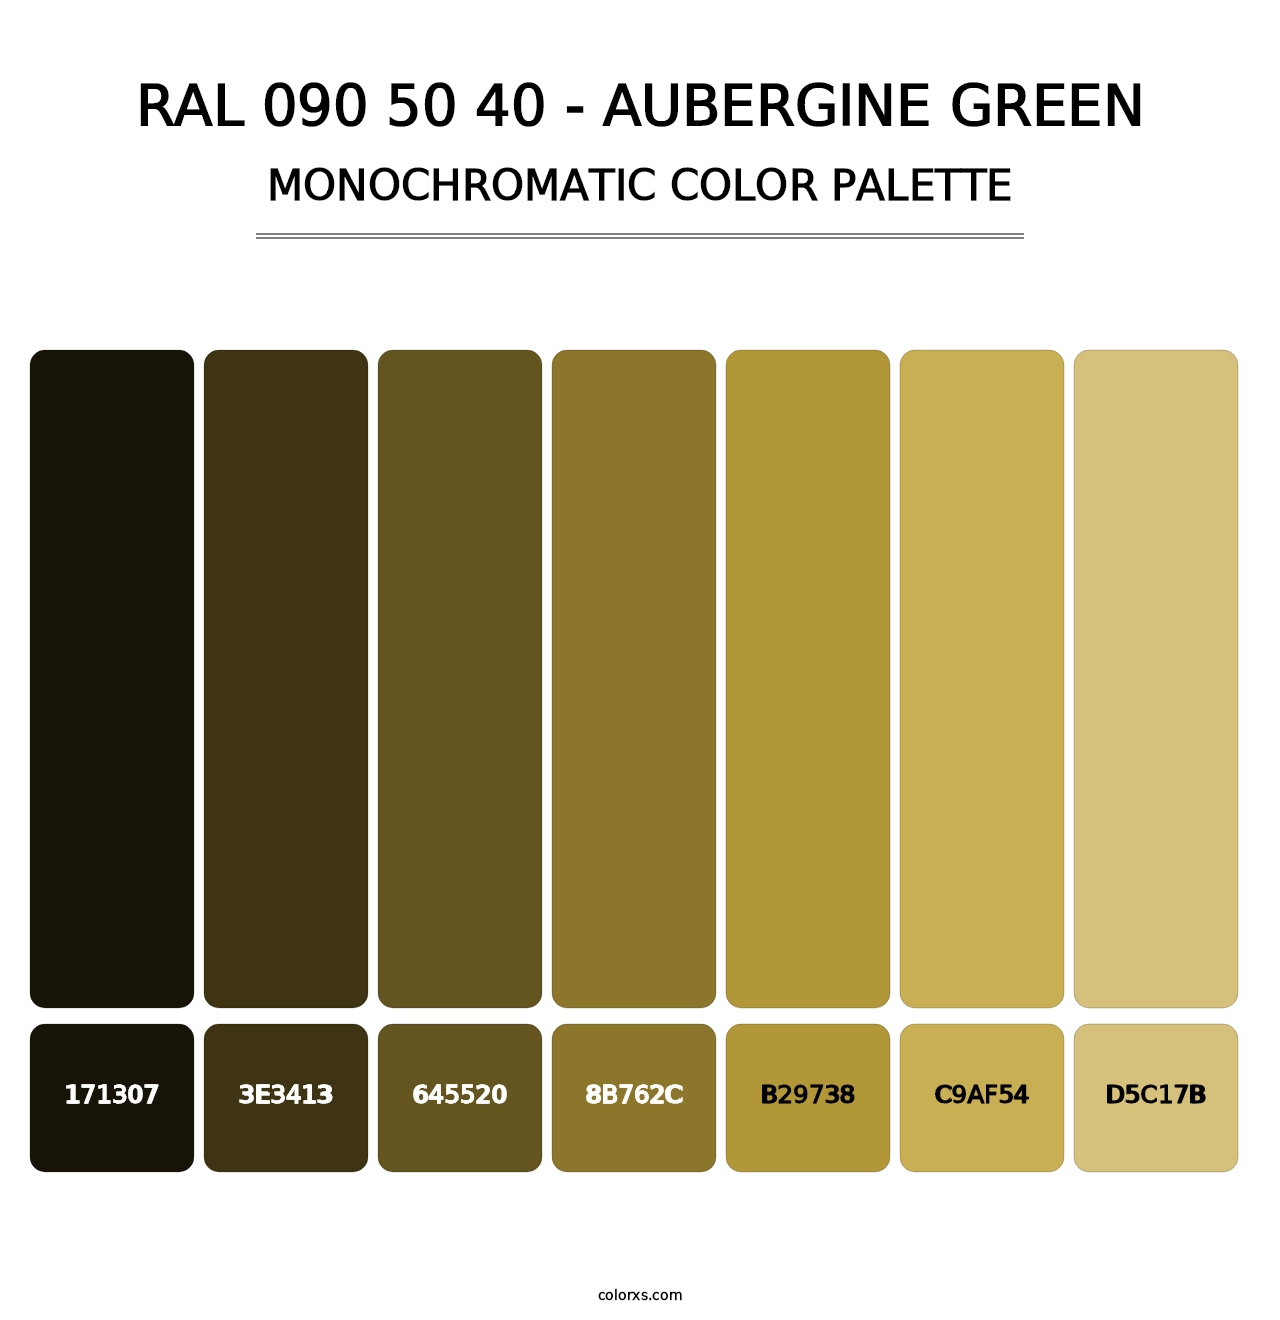 RAL 090 50 40 - Aubergine Green - Monochromatic Color Palette